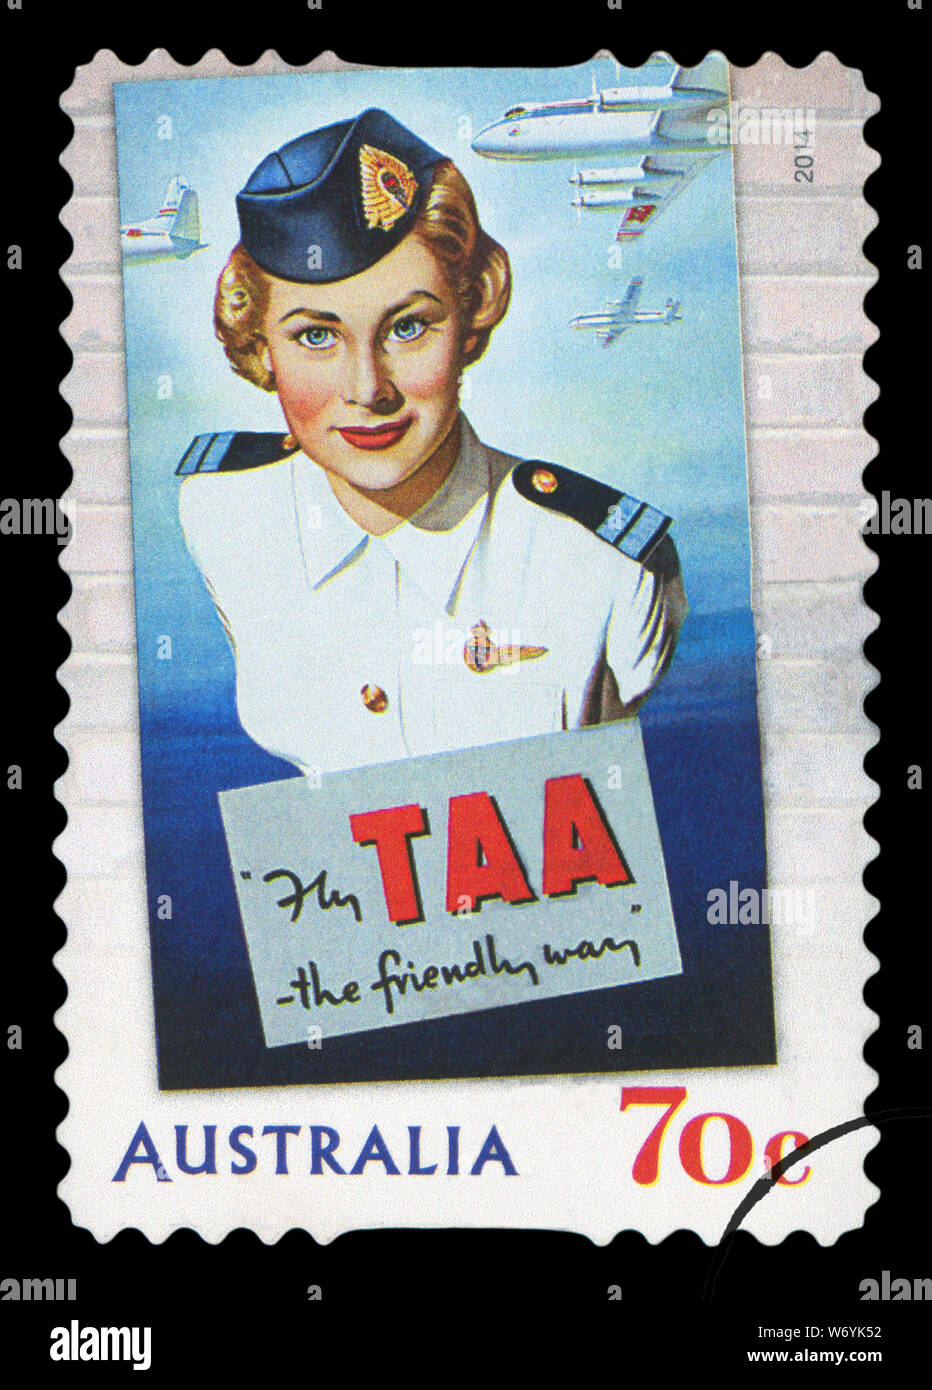 AUSTRALIA - circa 2014: un timbro mostra immagine della Australian Airlines TAA, il modo cordiale, circa 2014. Foto Stock